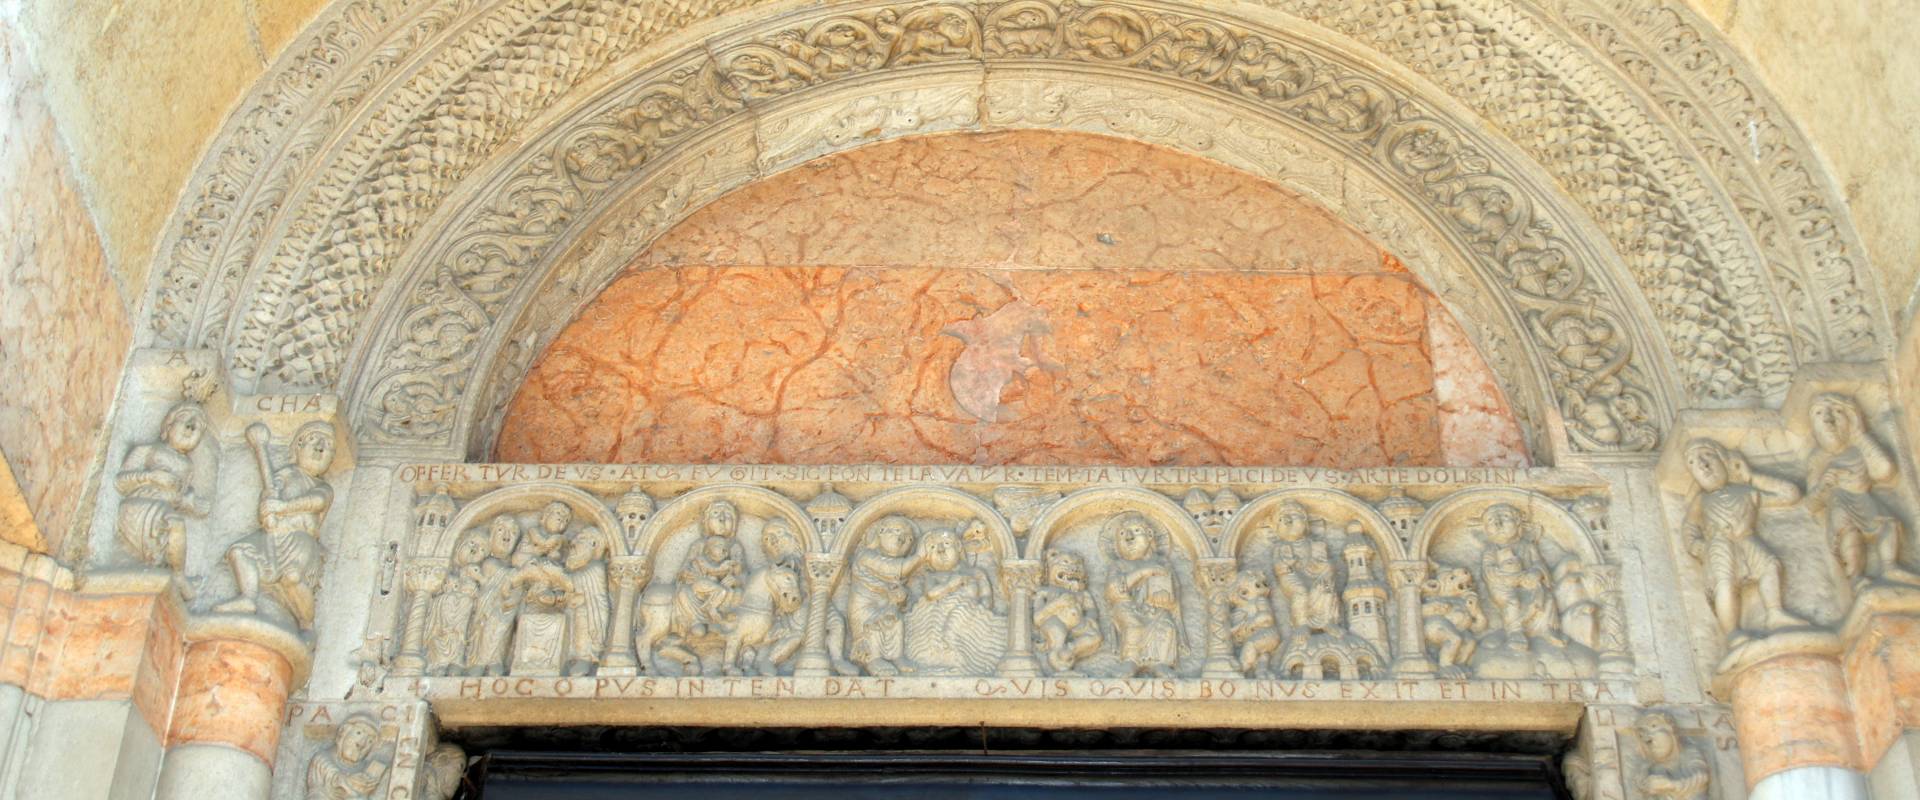 Duomo (Piacenza), portale destro, archivolto 03 photo by Mongolo1984